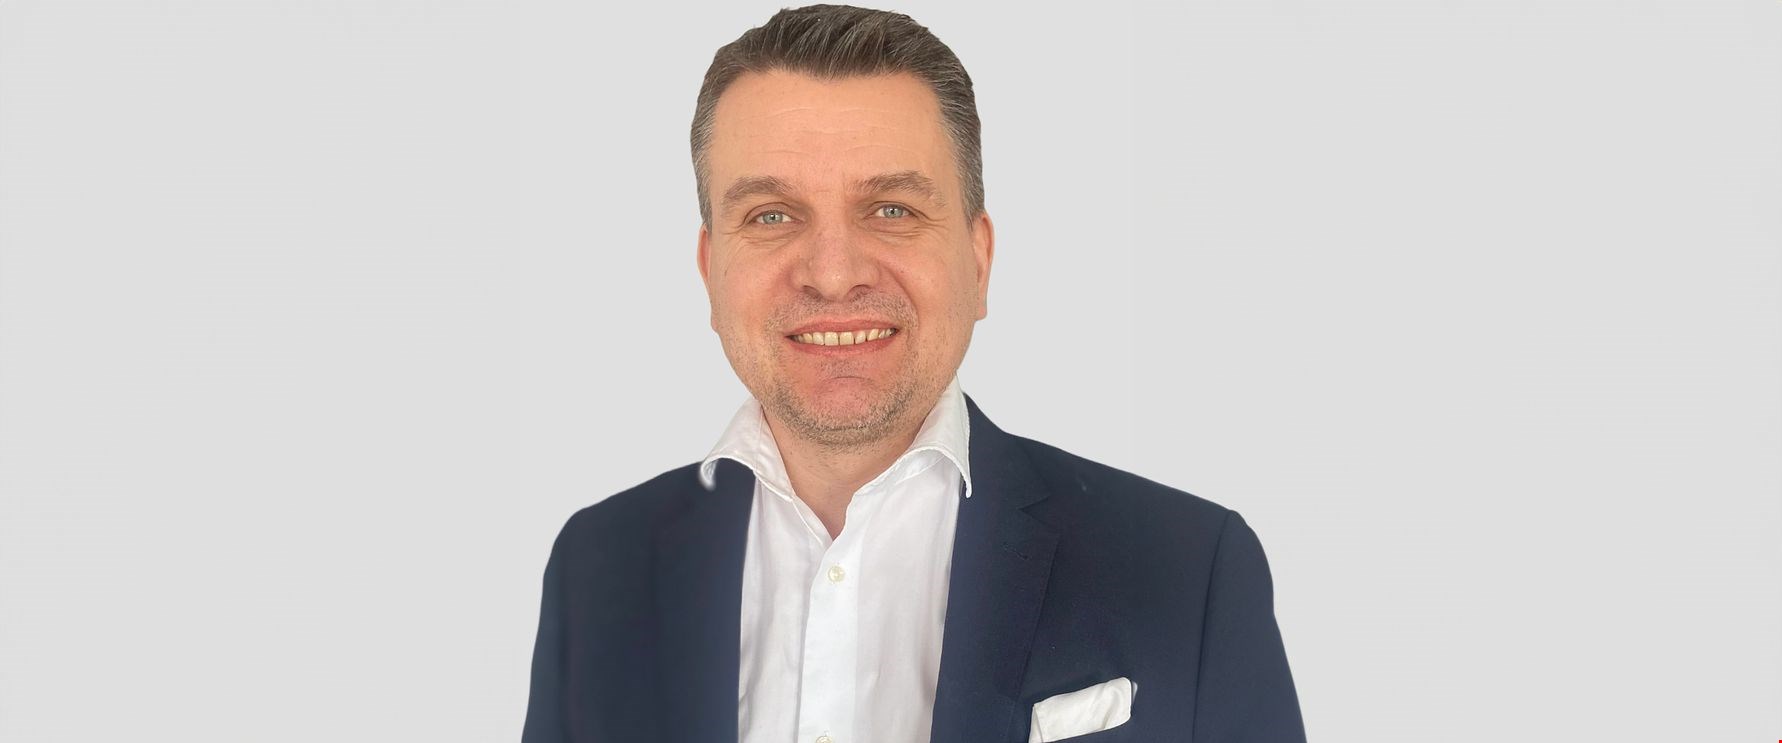 Riksbyggen anställer IT säkerhets- och Informationssäkerhetschef (CISO) i egenskap av Martin Finnerman